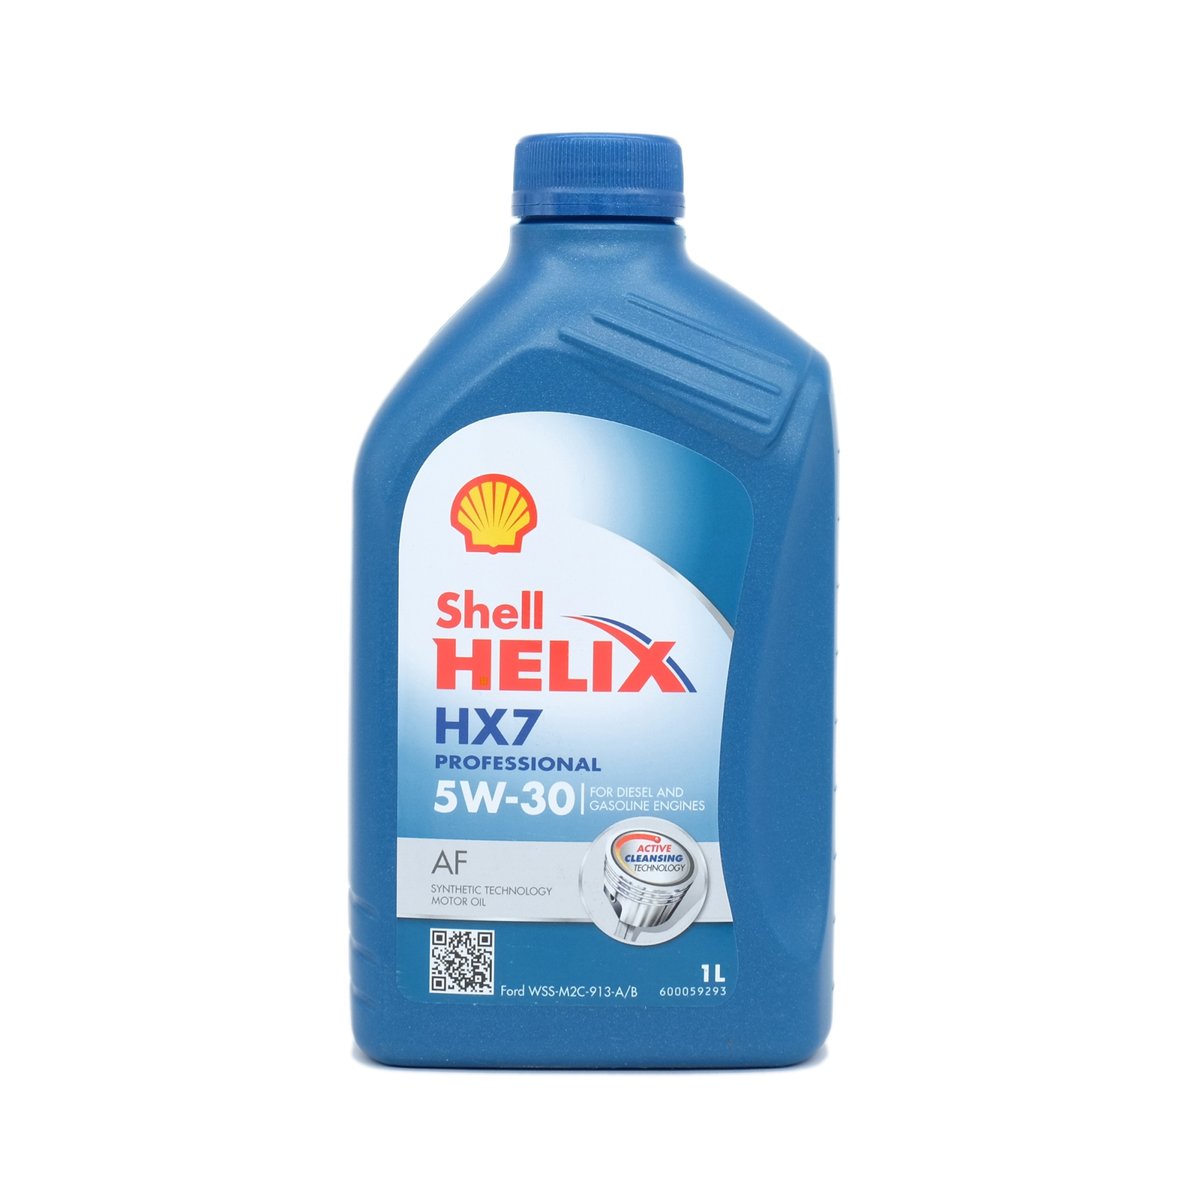 Zdjęcia - Olej silnikowy Shell Helix Hx7 Professional Af 5W-30 (1L) 